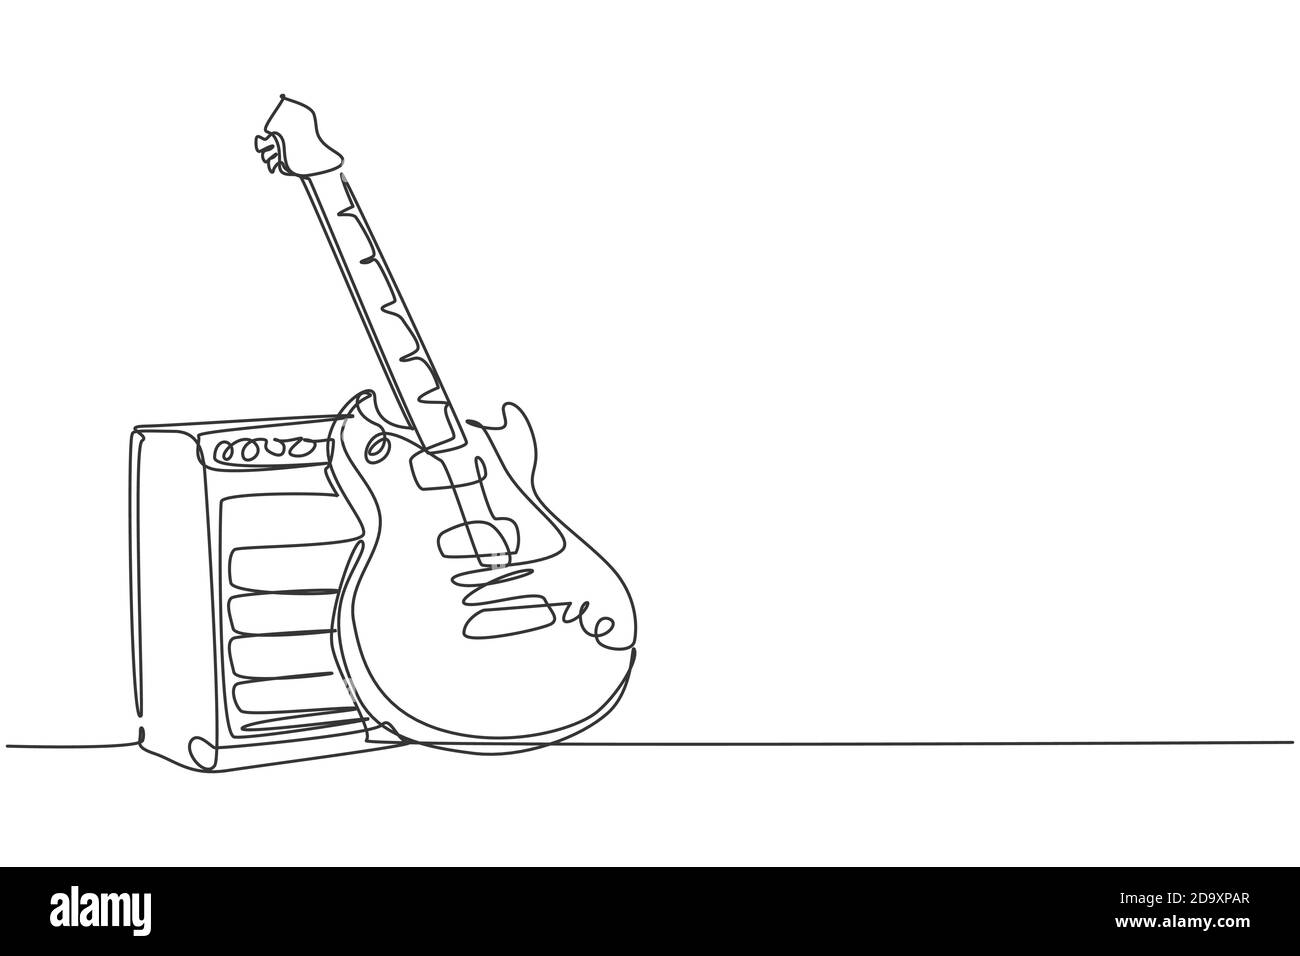 guitar amp sketch